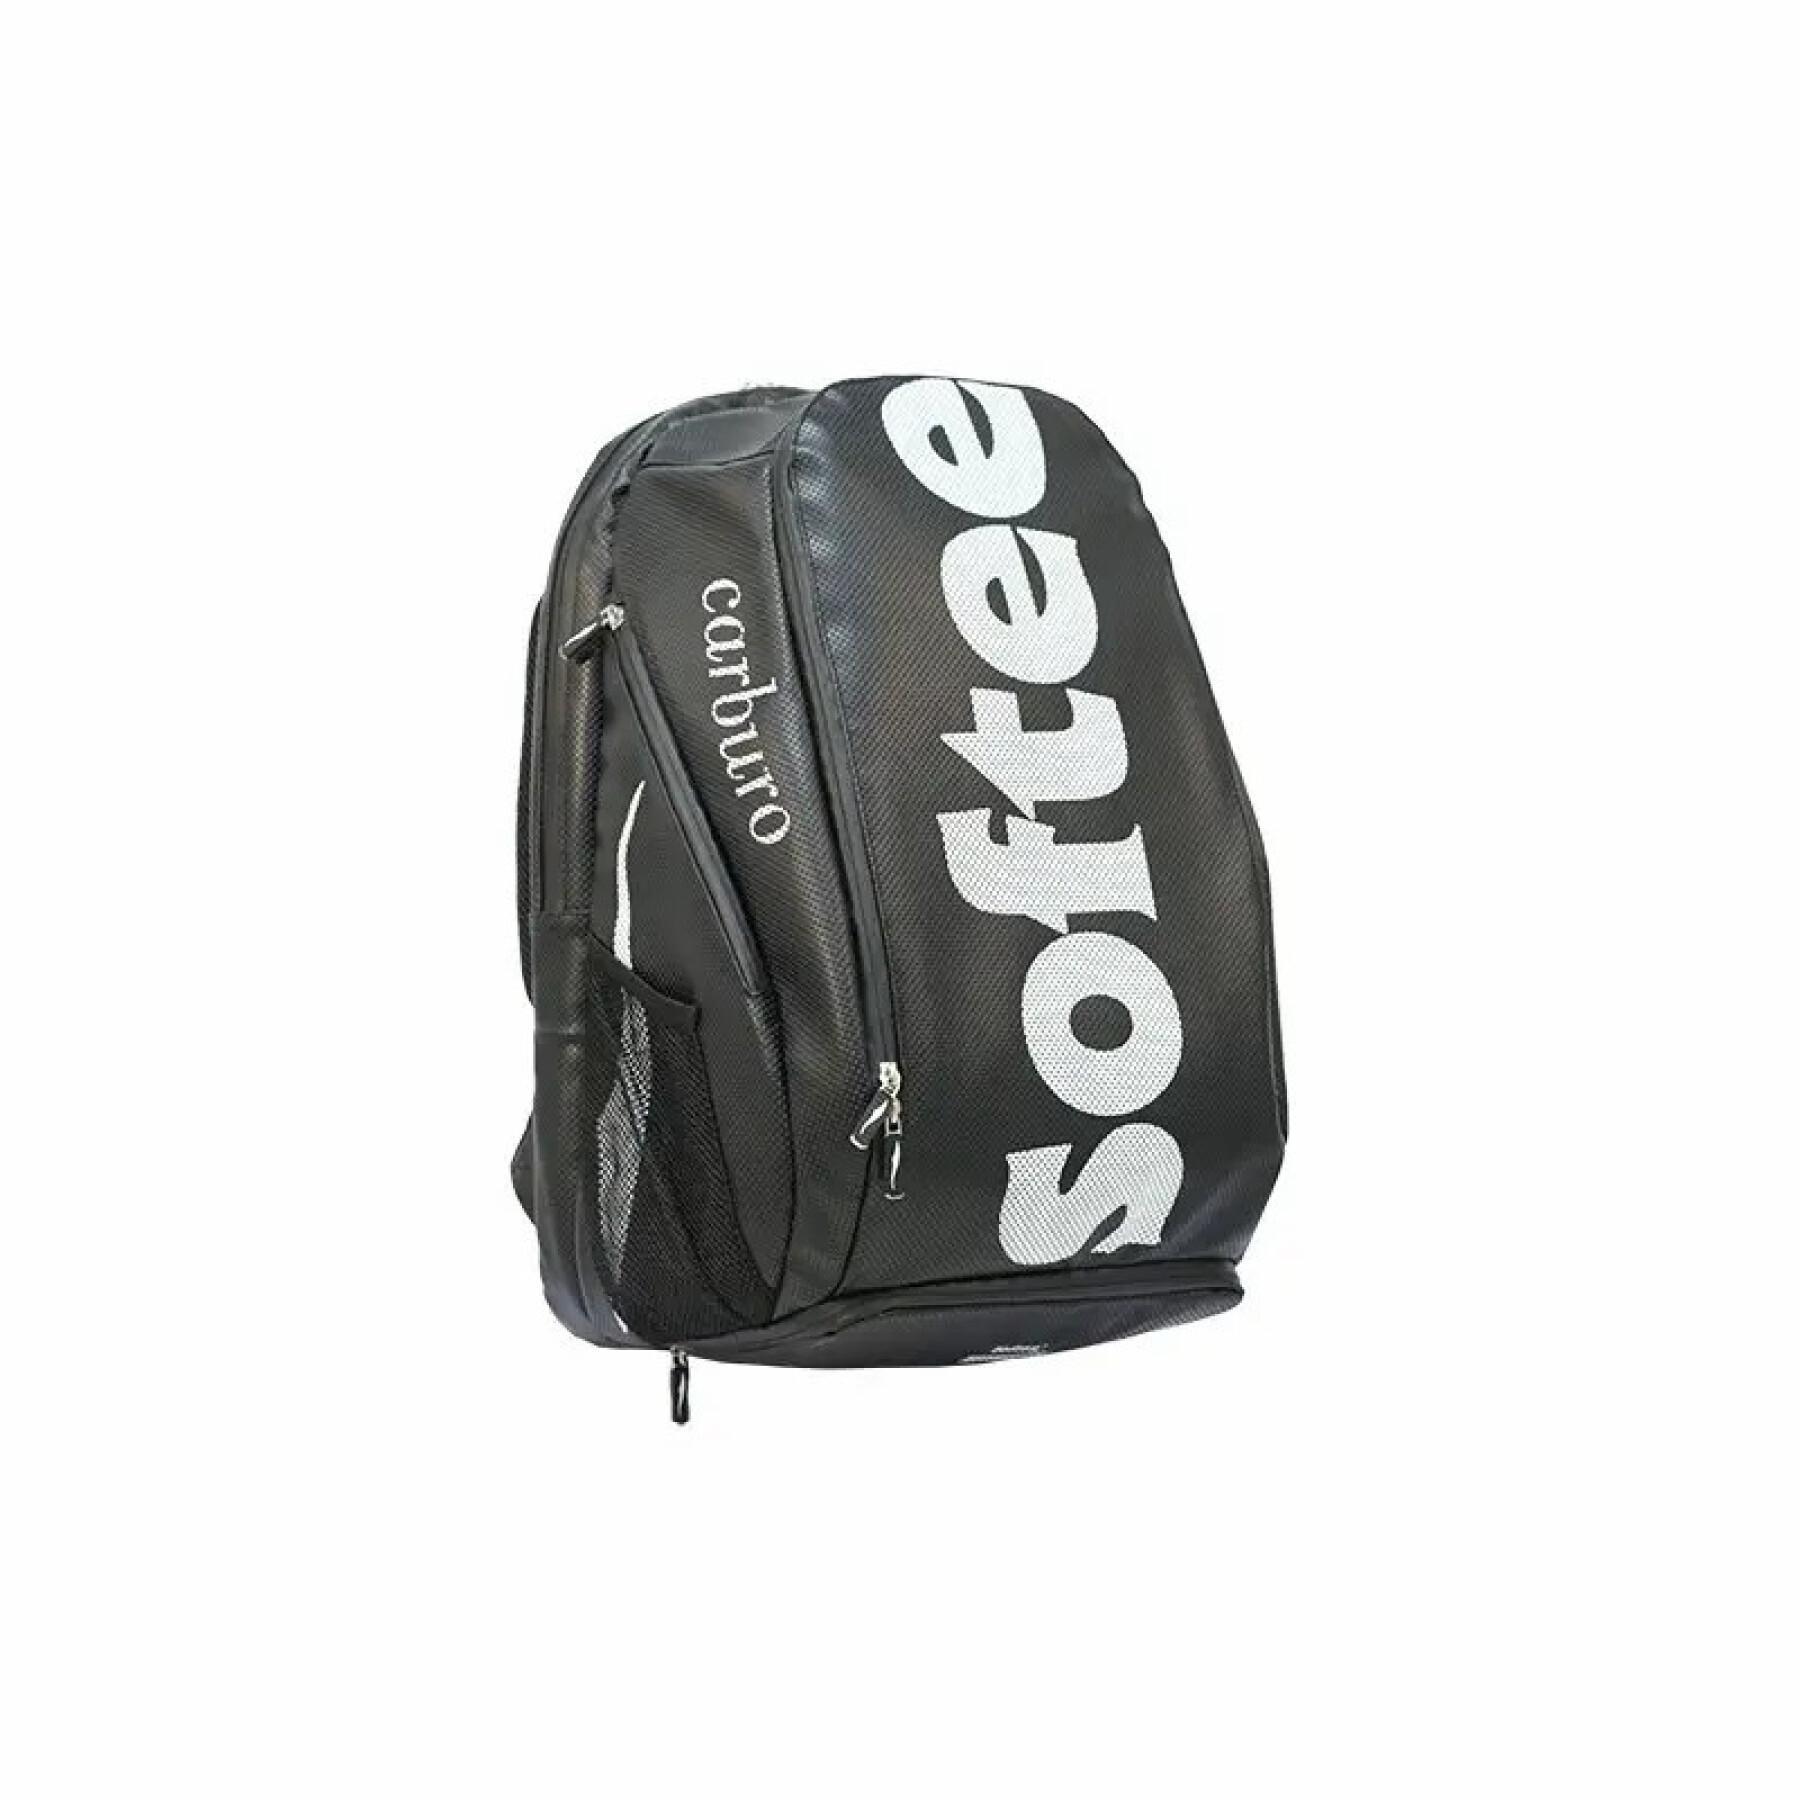 Backpack Softee Car